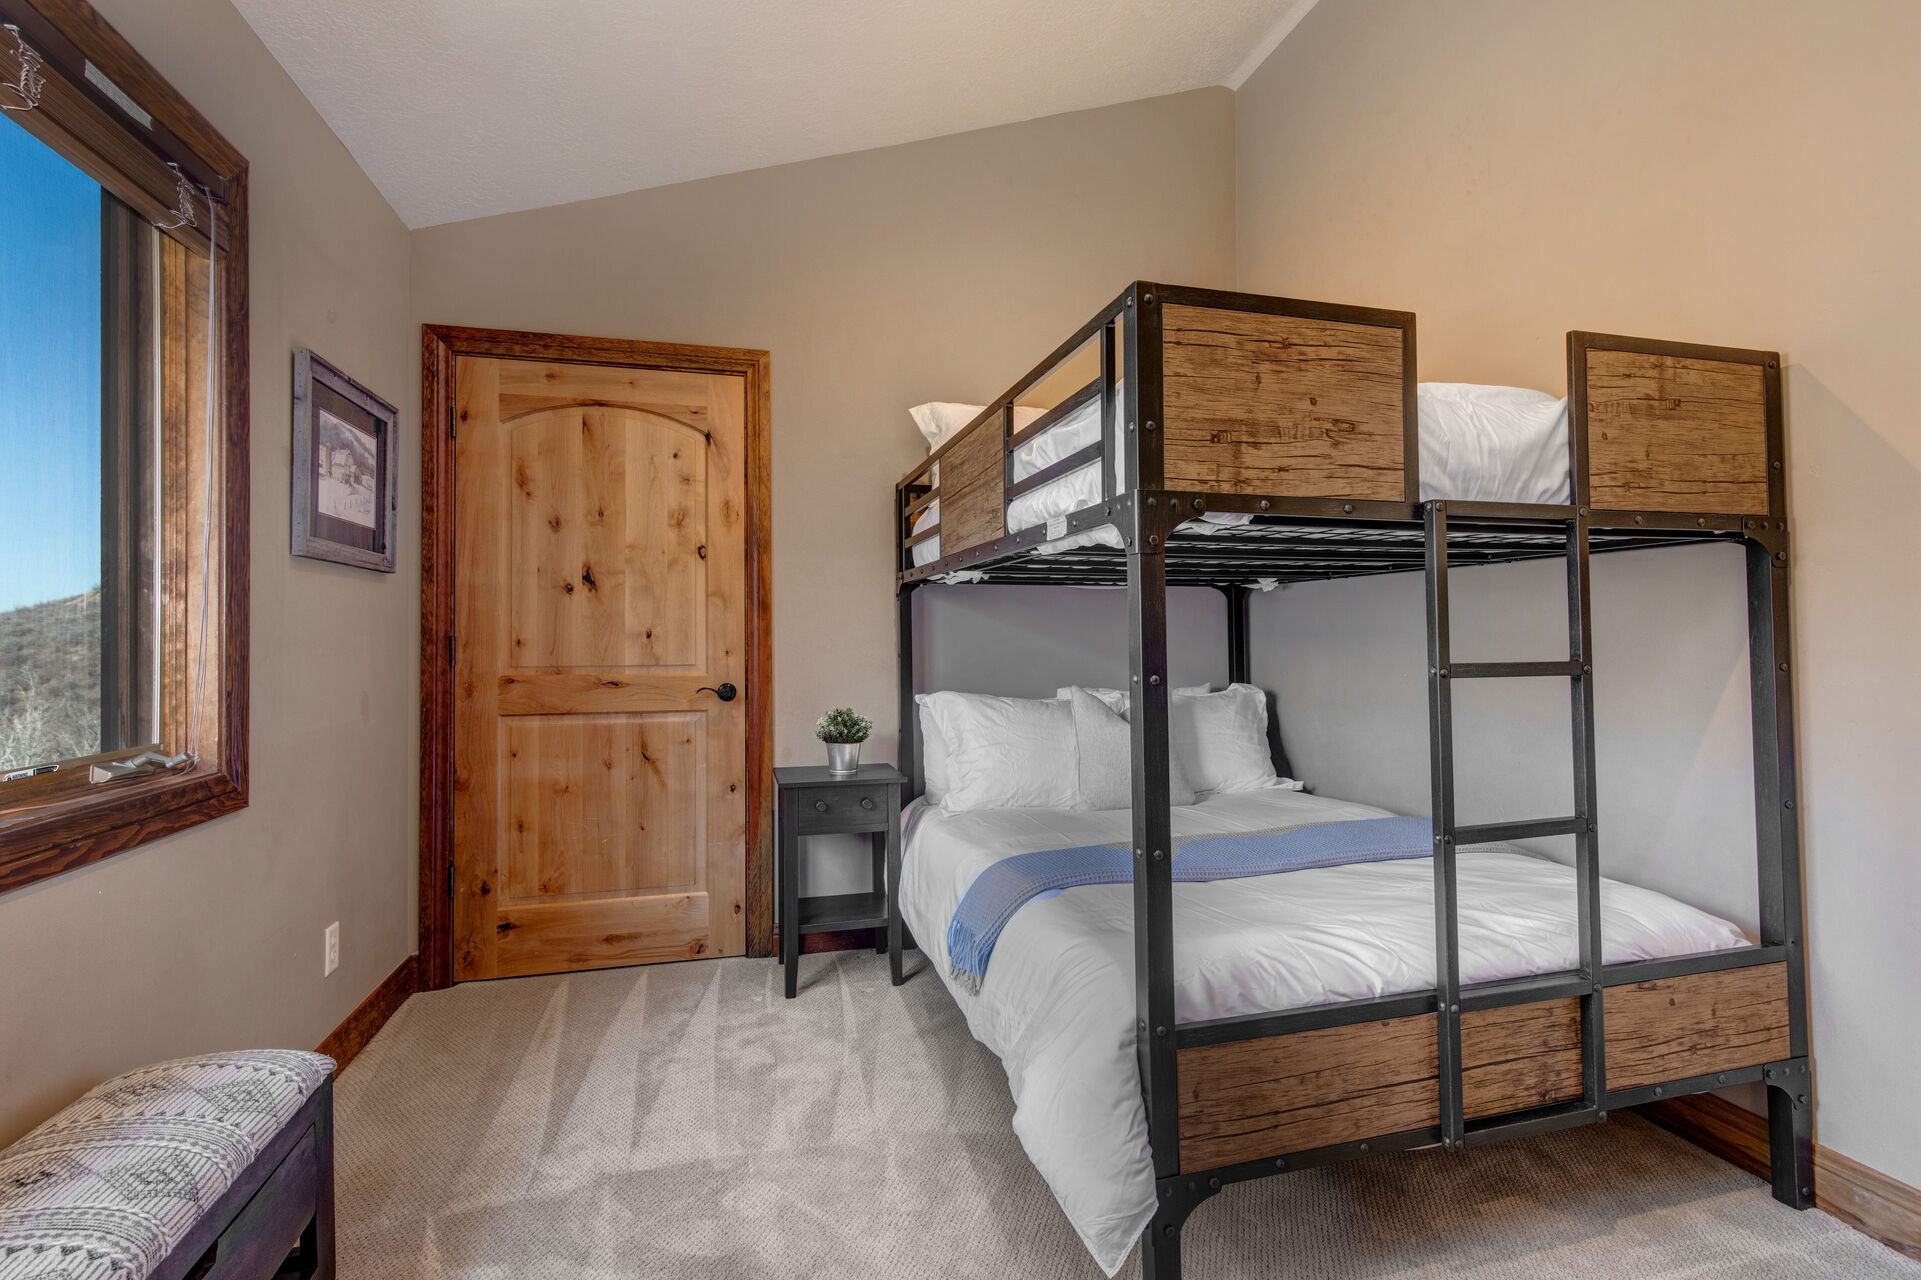 Bedroom 3 - Bunk Room - Full Over Full Bunk Beds